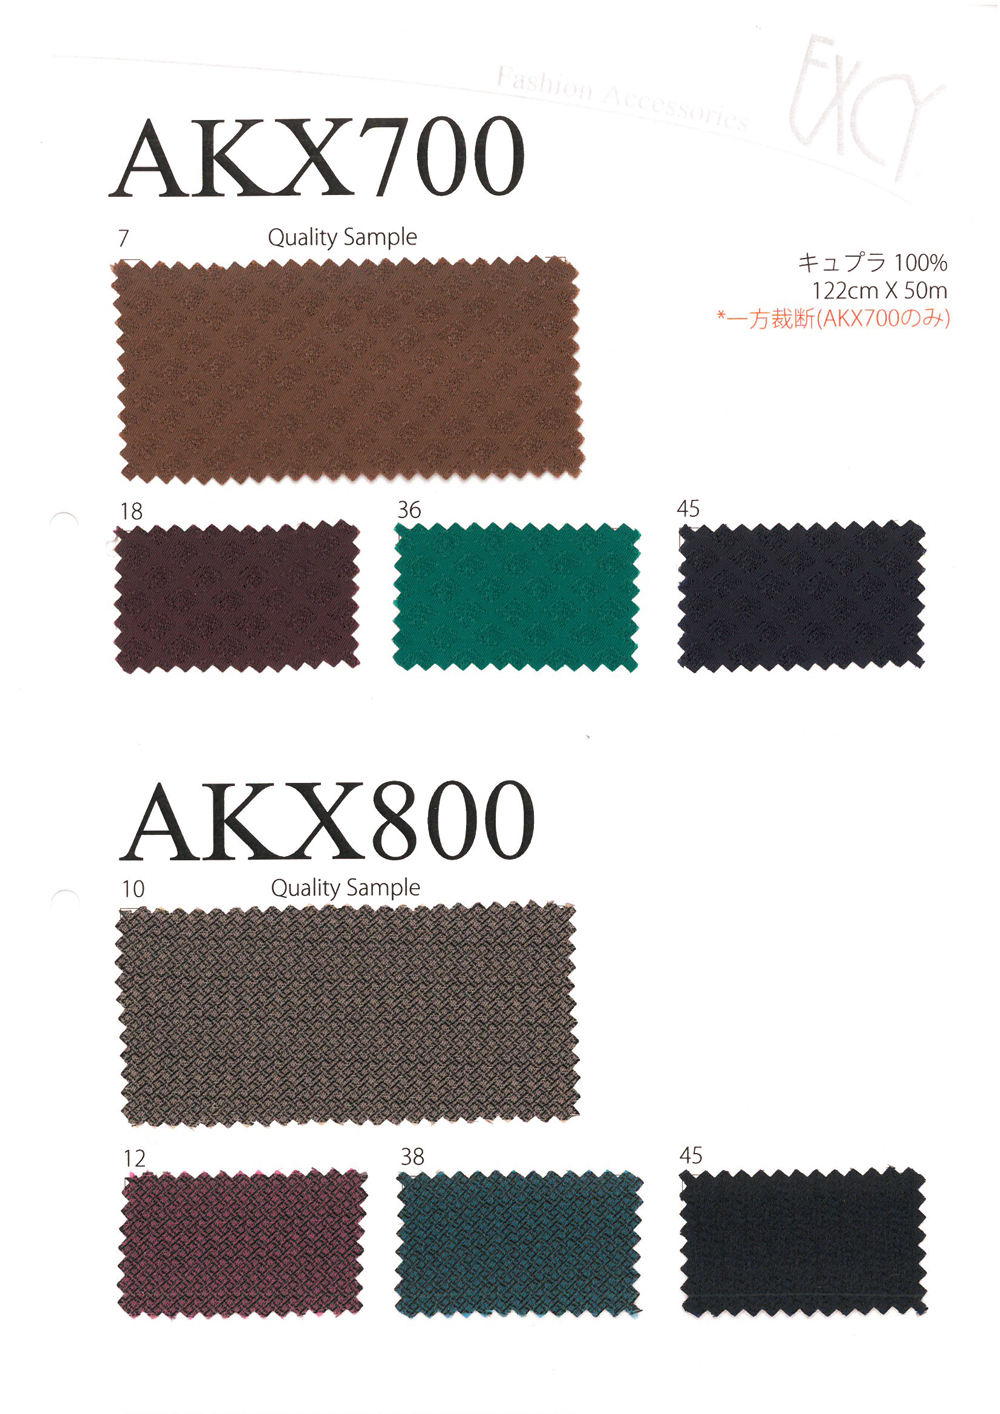 AKX700 기와 무늬 고급 자카드 안감 아사히 카세이 (아사히카세)